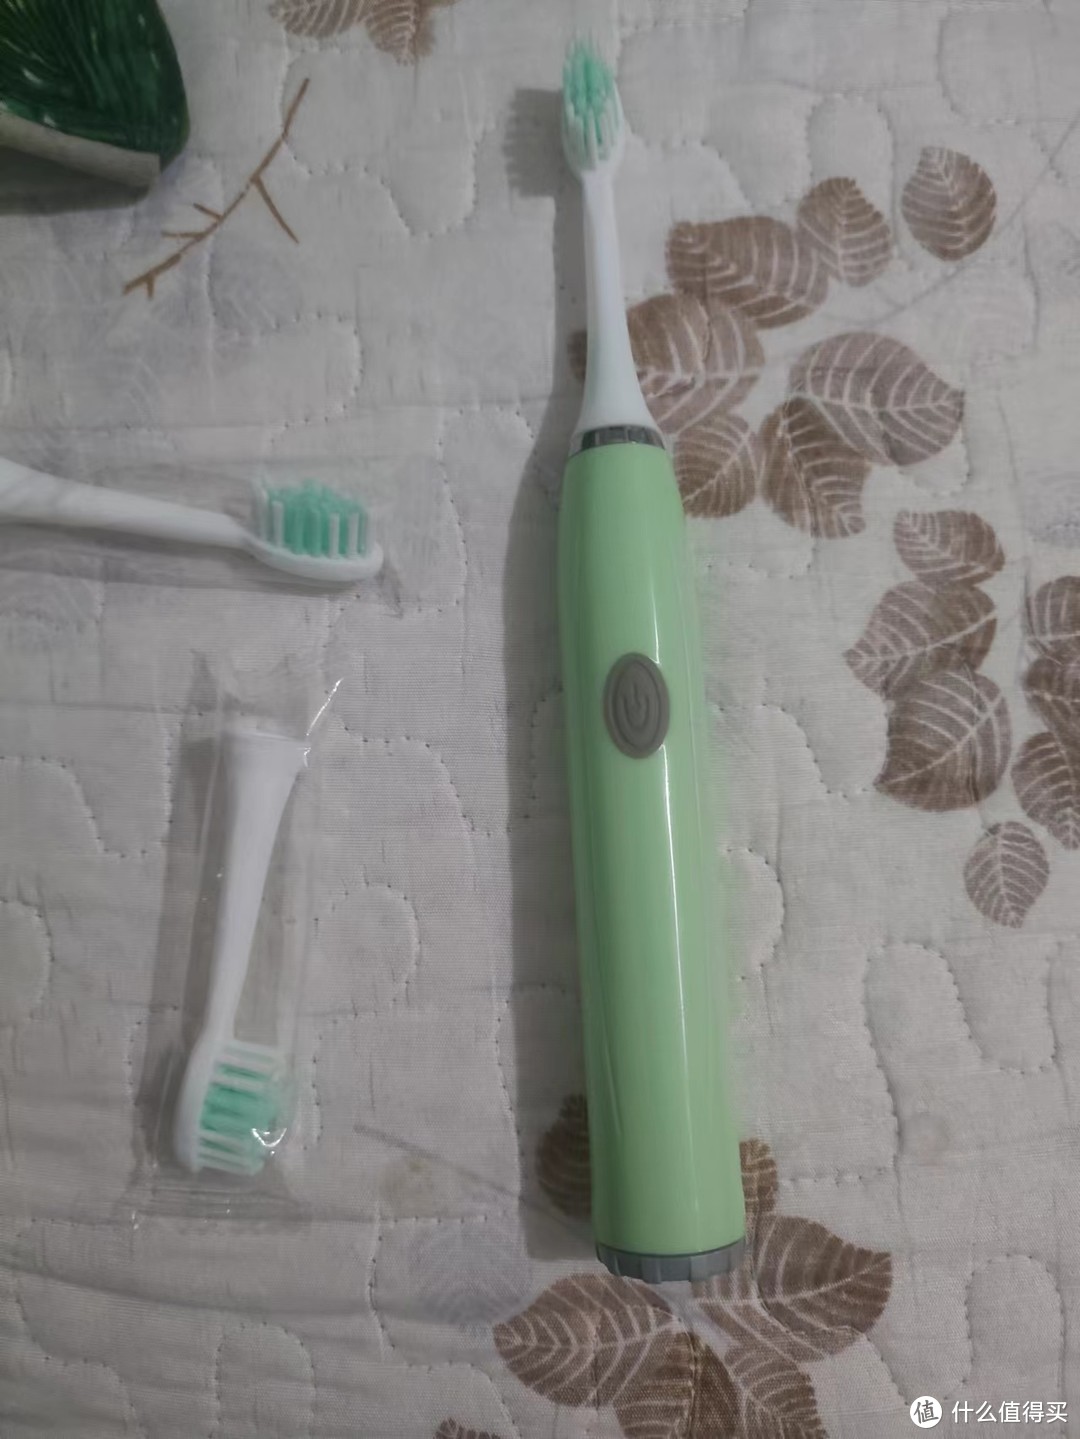 多功能清洁保护牙齿的电动牙刷